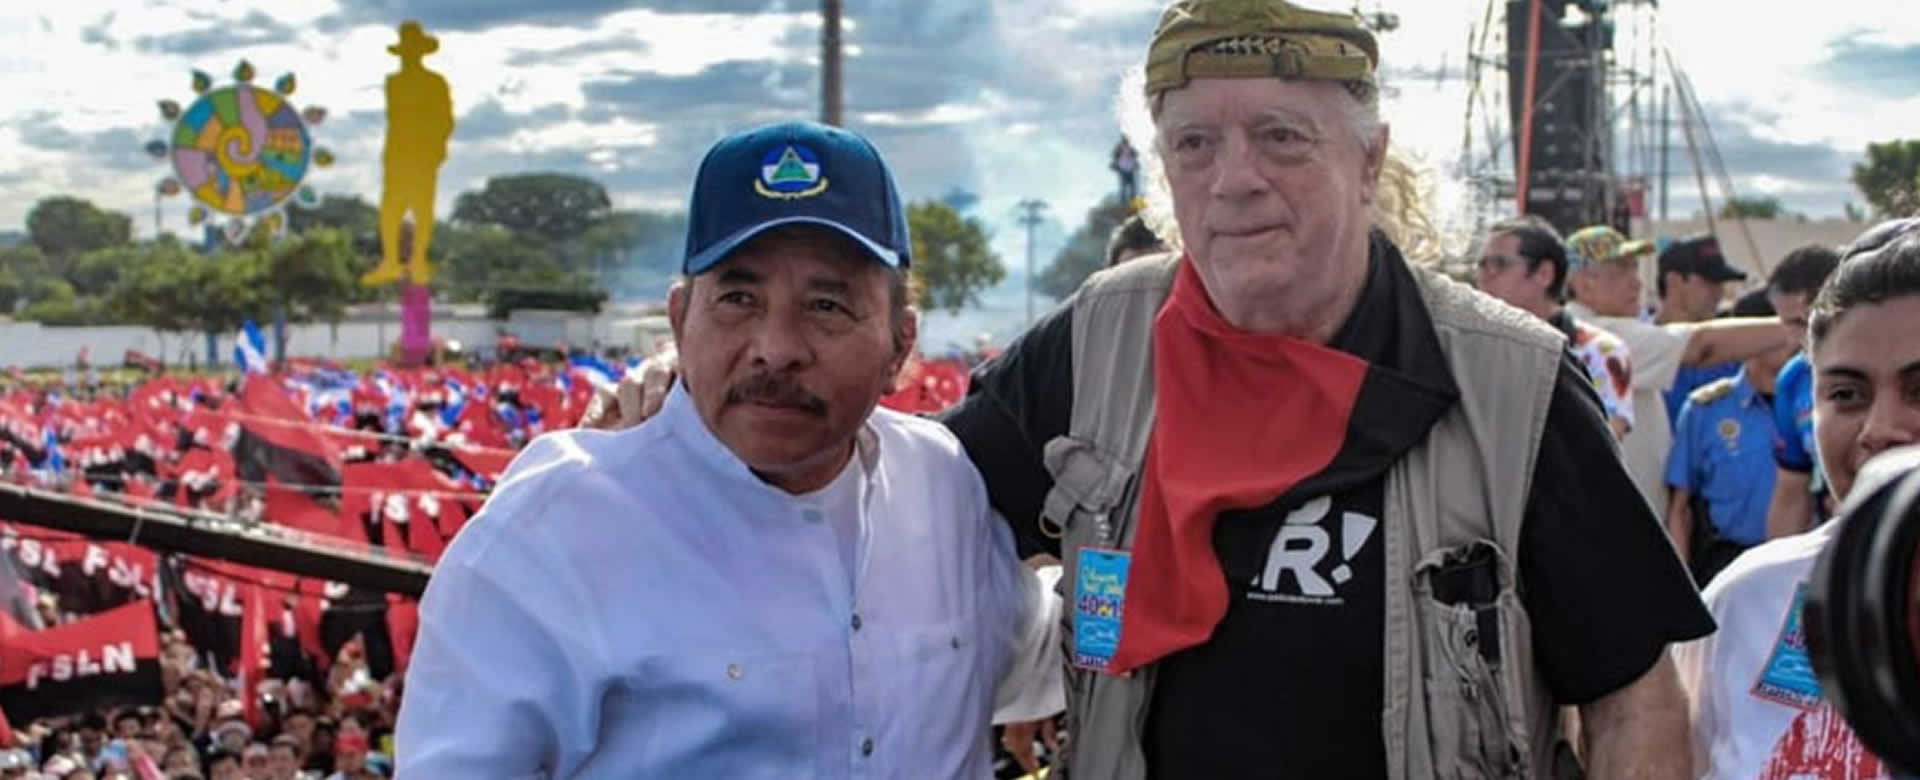 Cancillería de Nicaragua honra al militante pacifista Brian Wilson